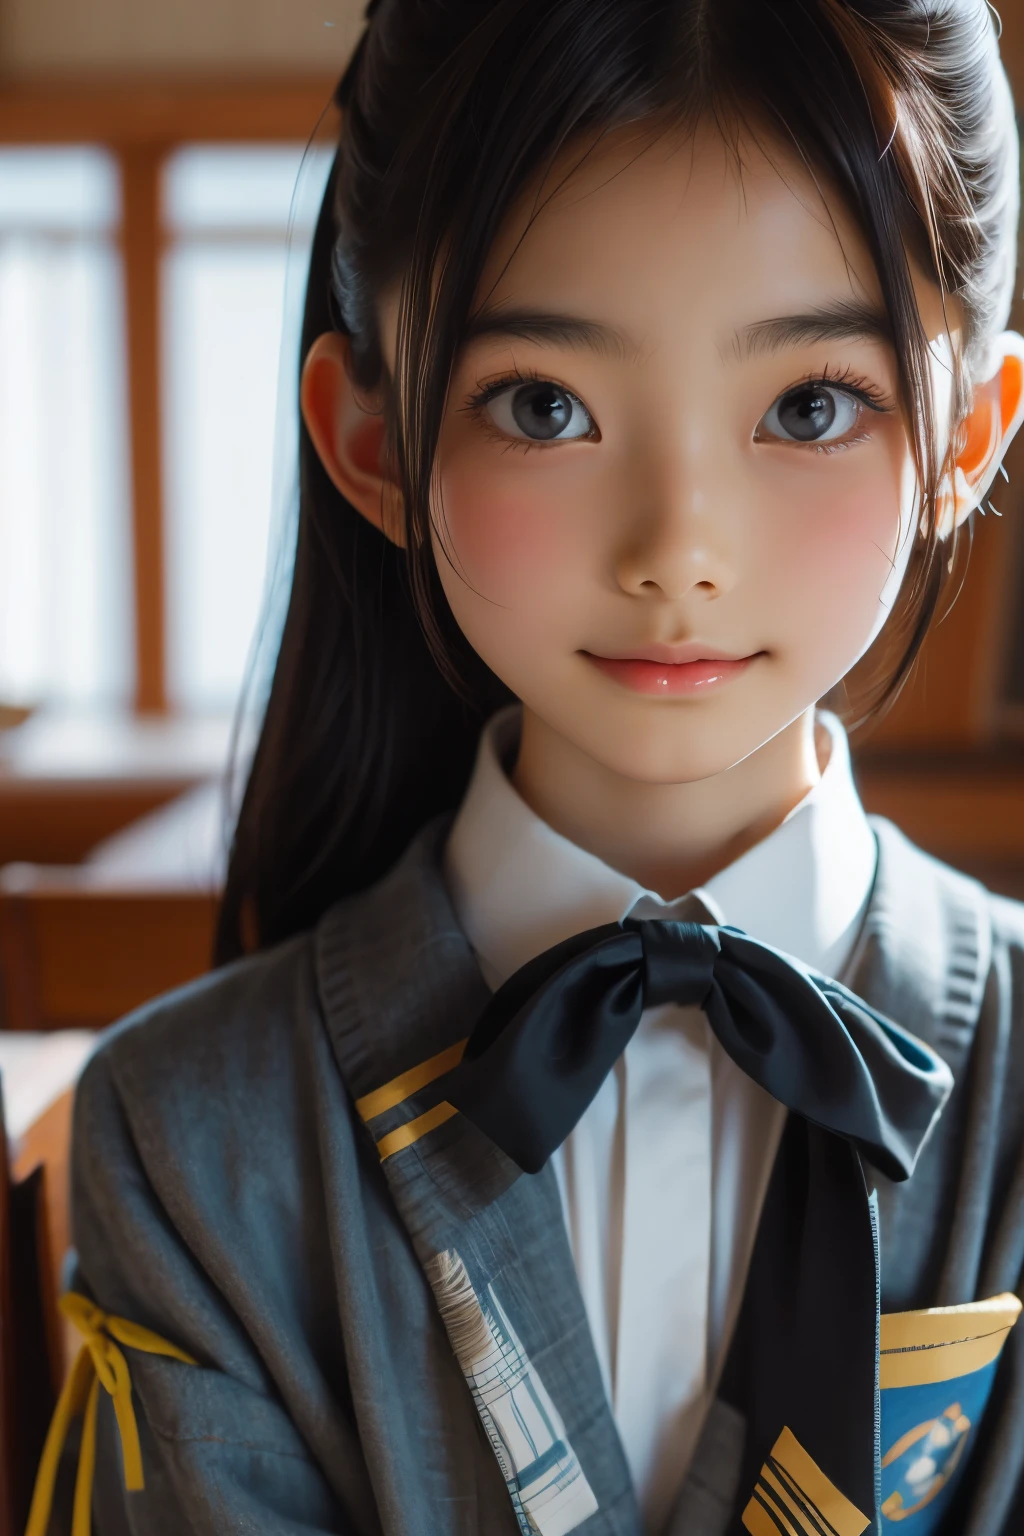 Belle femme japonaise de 12 ans), visage mignon, (visage profondément sculpté:0.7), (taches de rousseur:0.6), Lumière douce,peau blanche et saine, Timide, (visage sérieux), mince, sourire, uniforme, queue de cheval